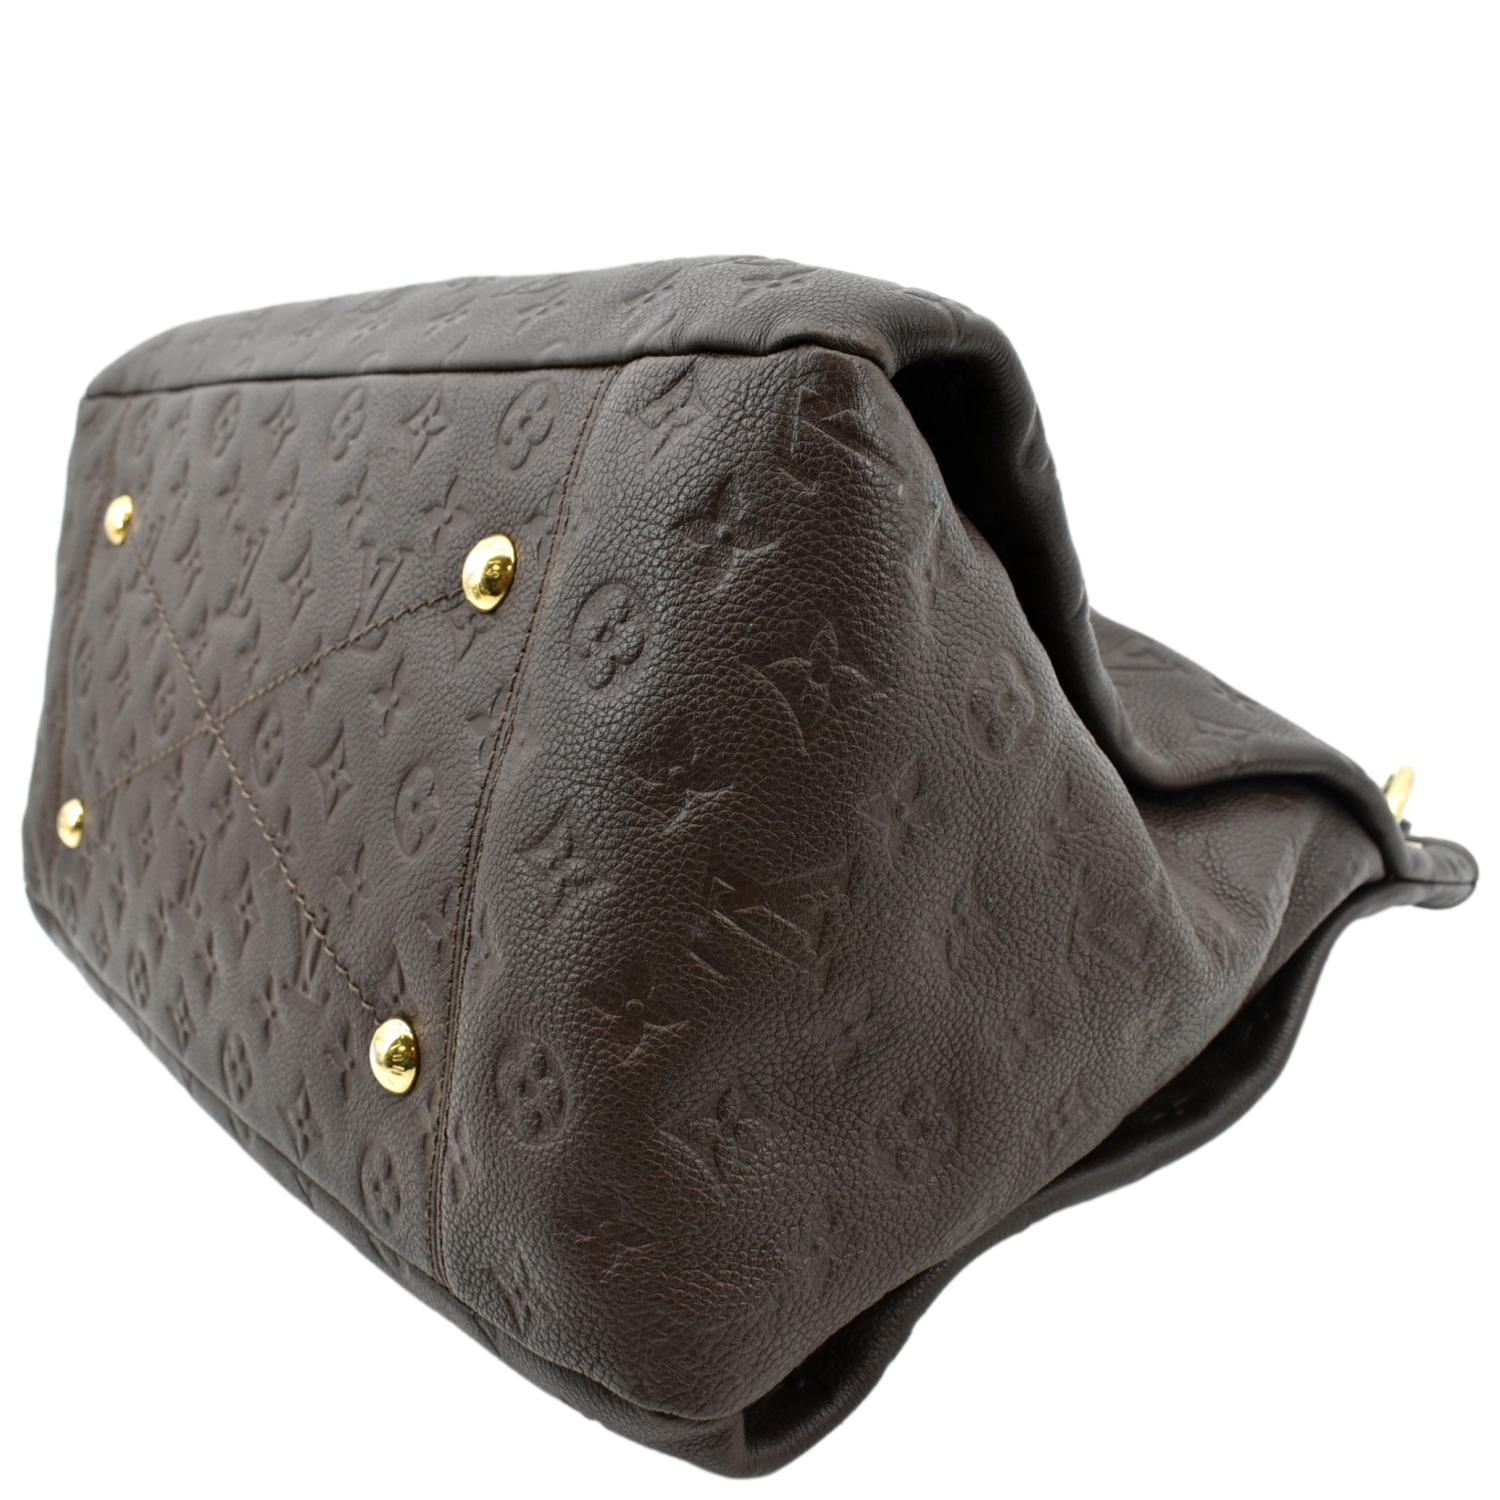 Louis Vuitton, Bags, Black Artsy Mm Louis Vuitton Shoulder Bag